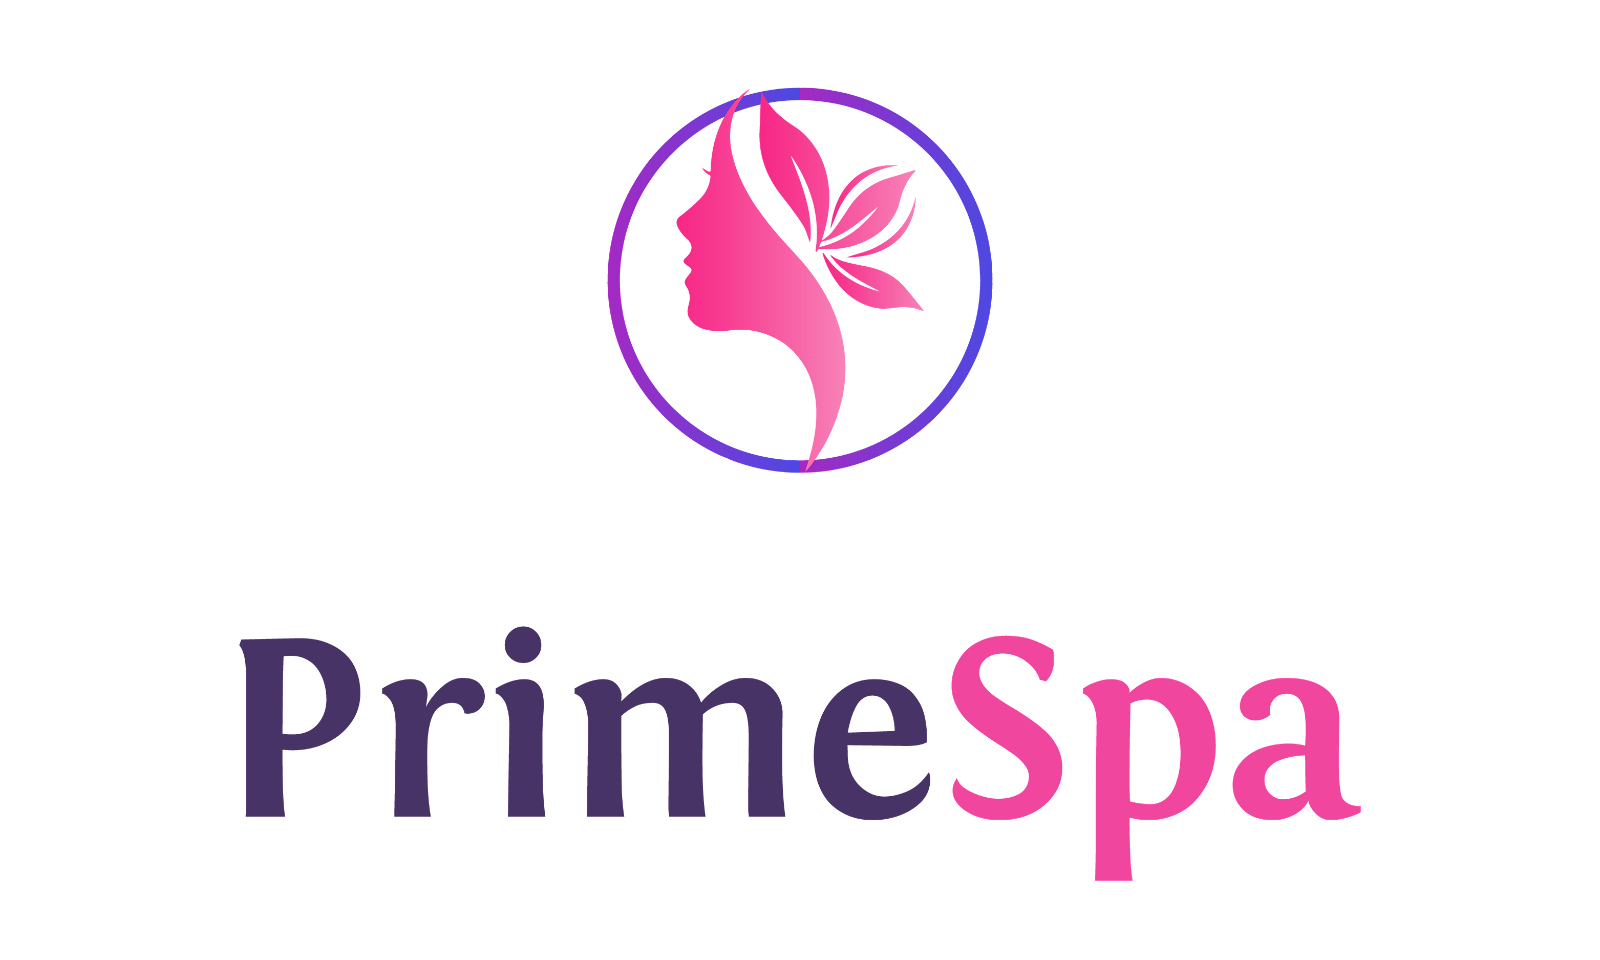 PrimeSpa.com - Creative brandable domain for sale